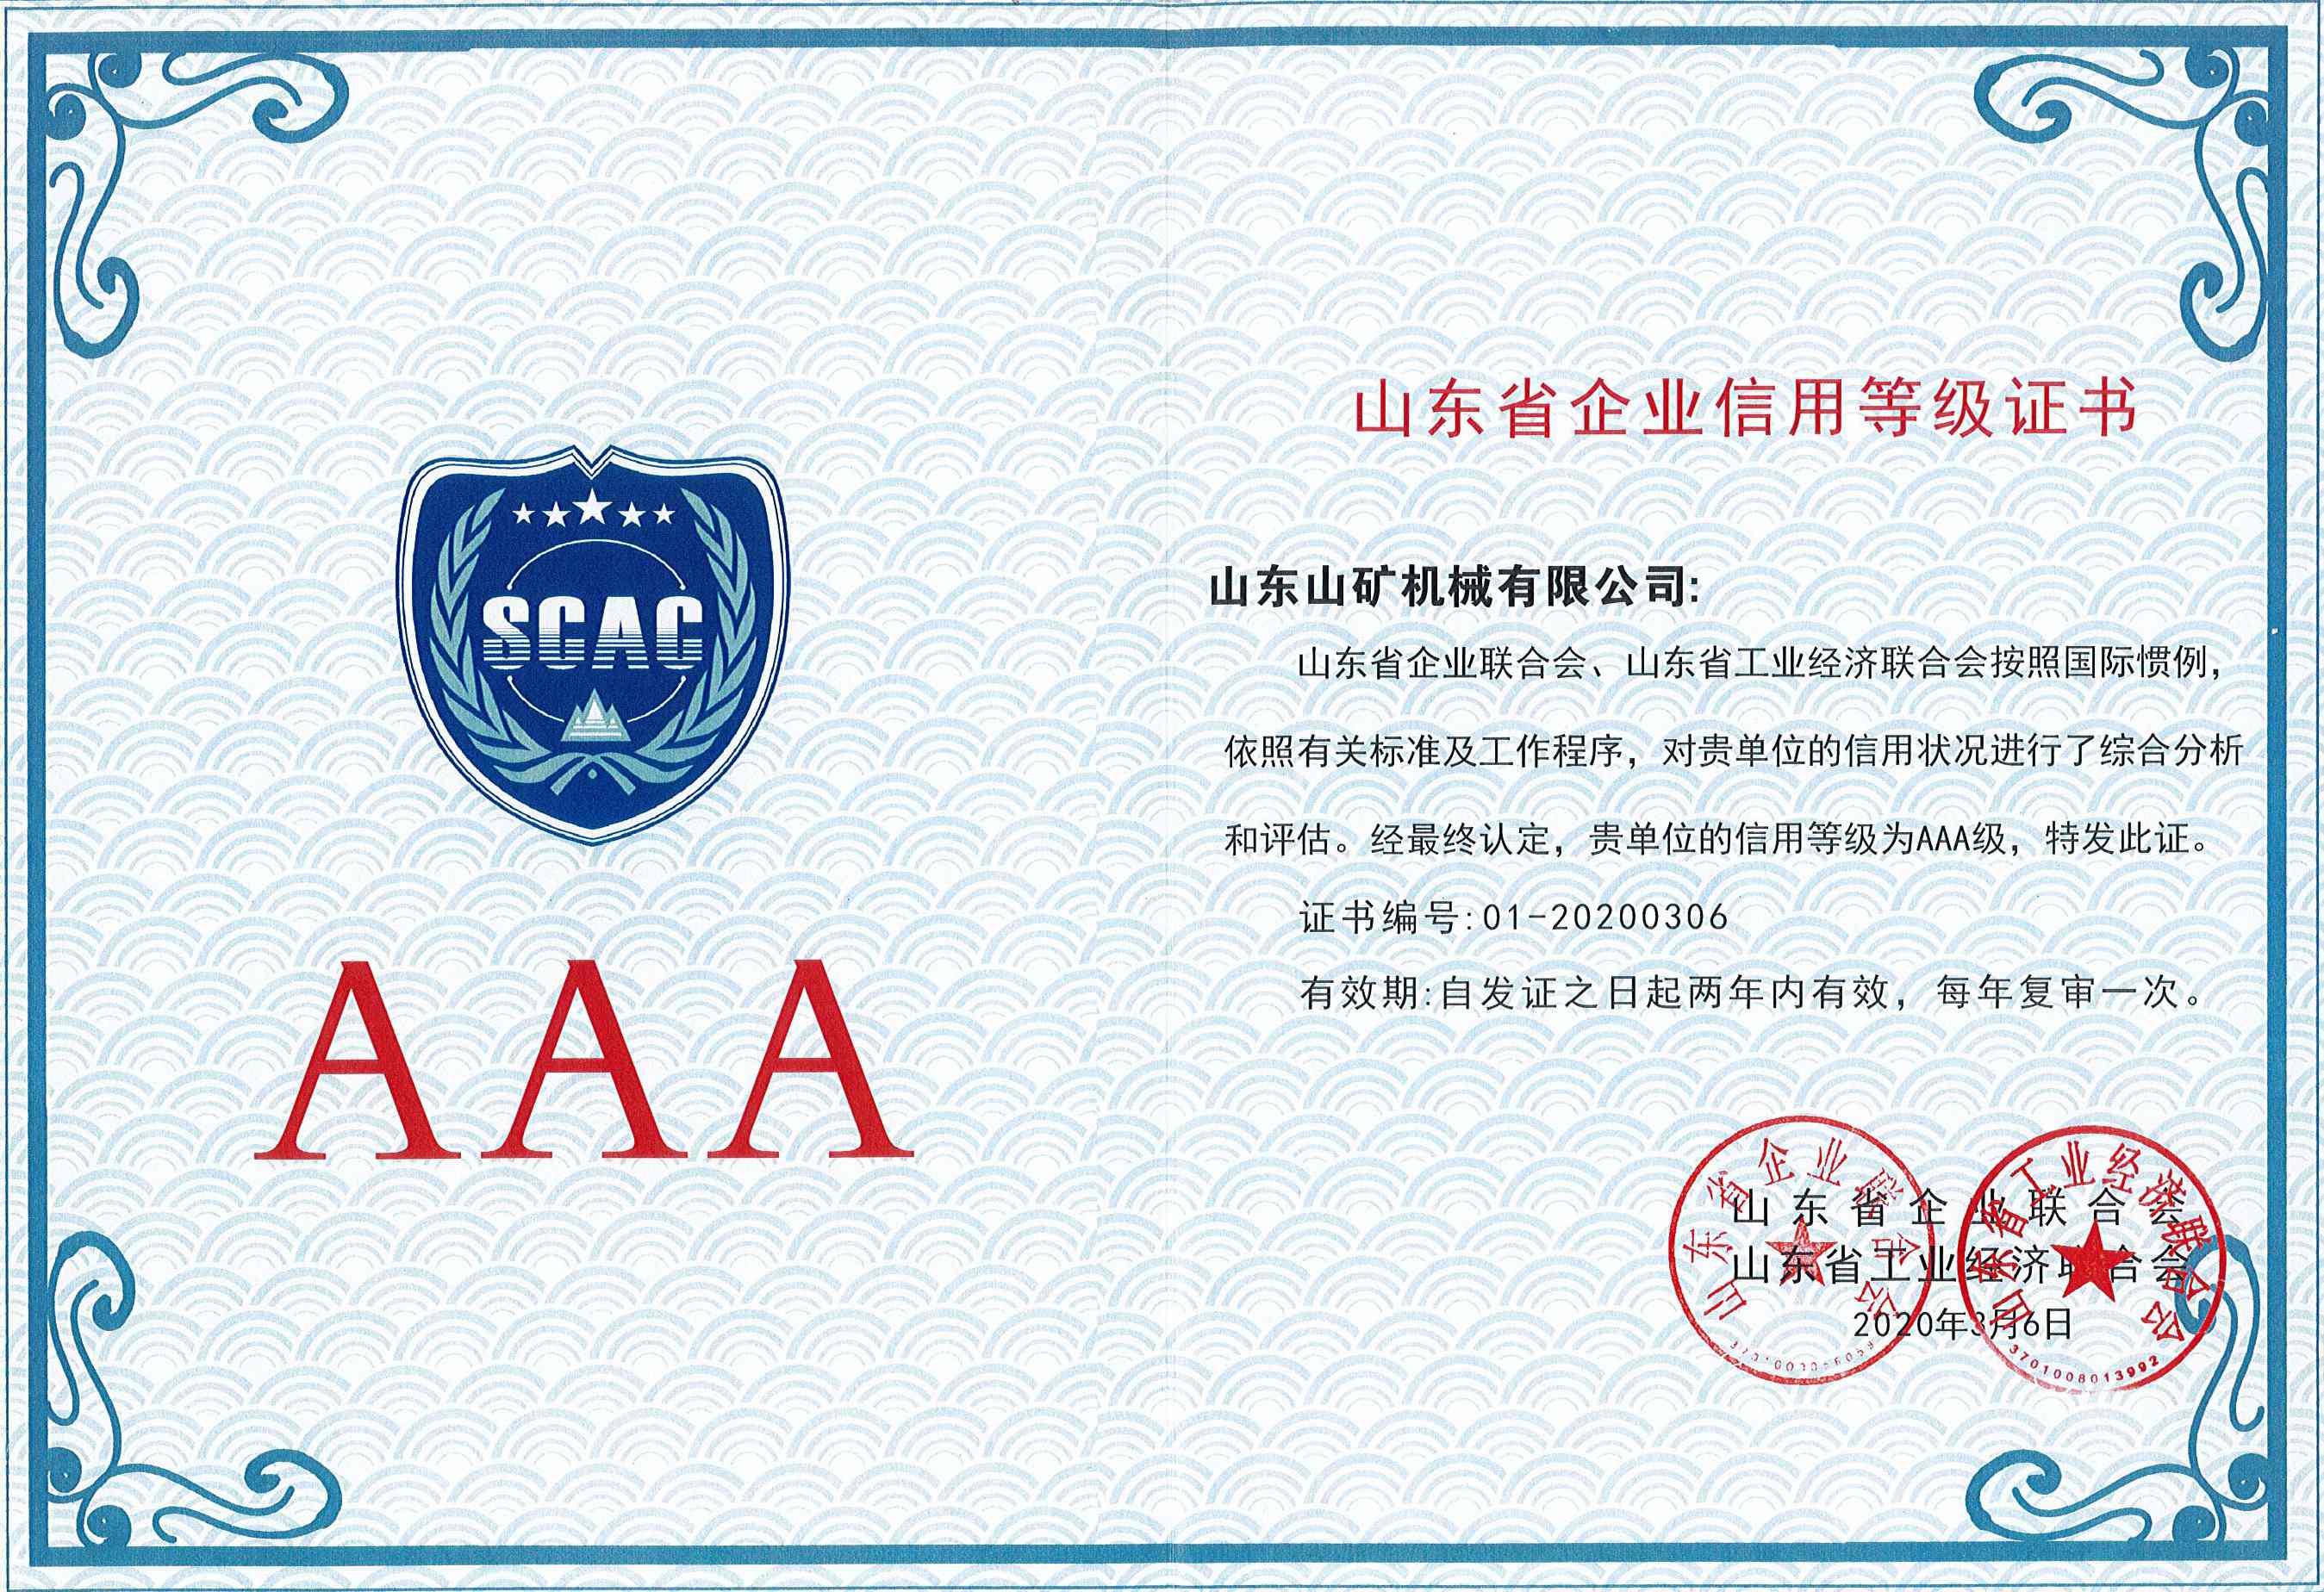 AAA企业信誉等级证书